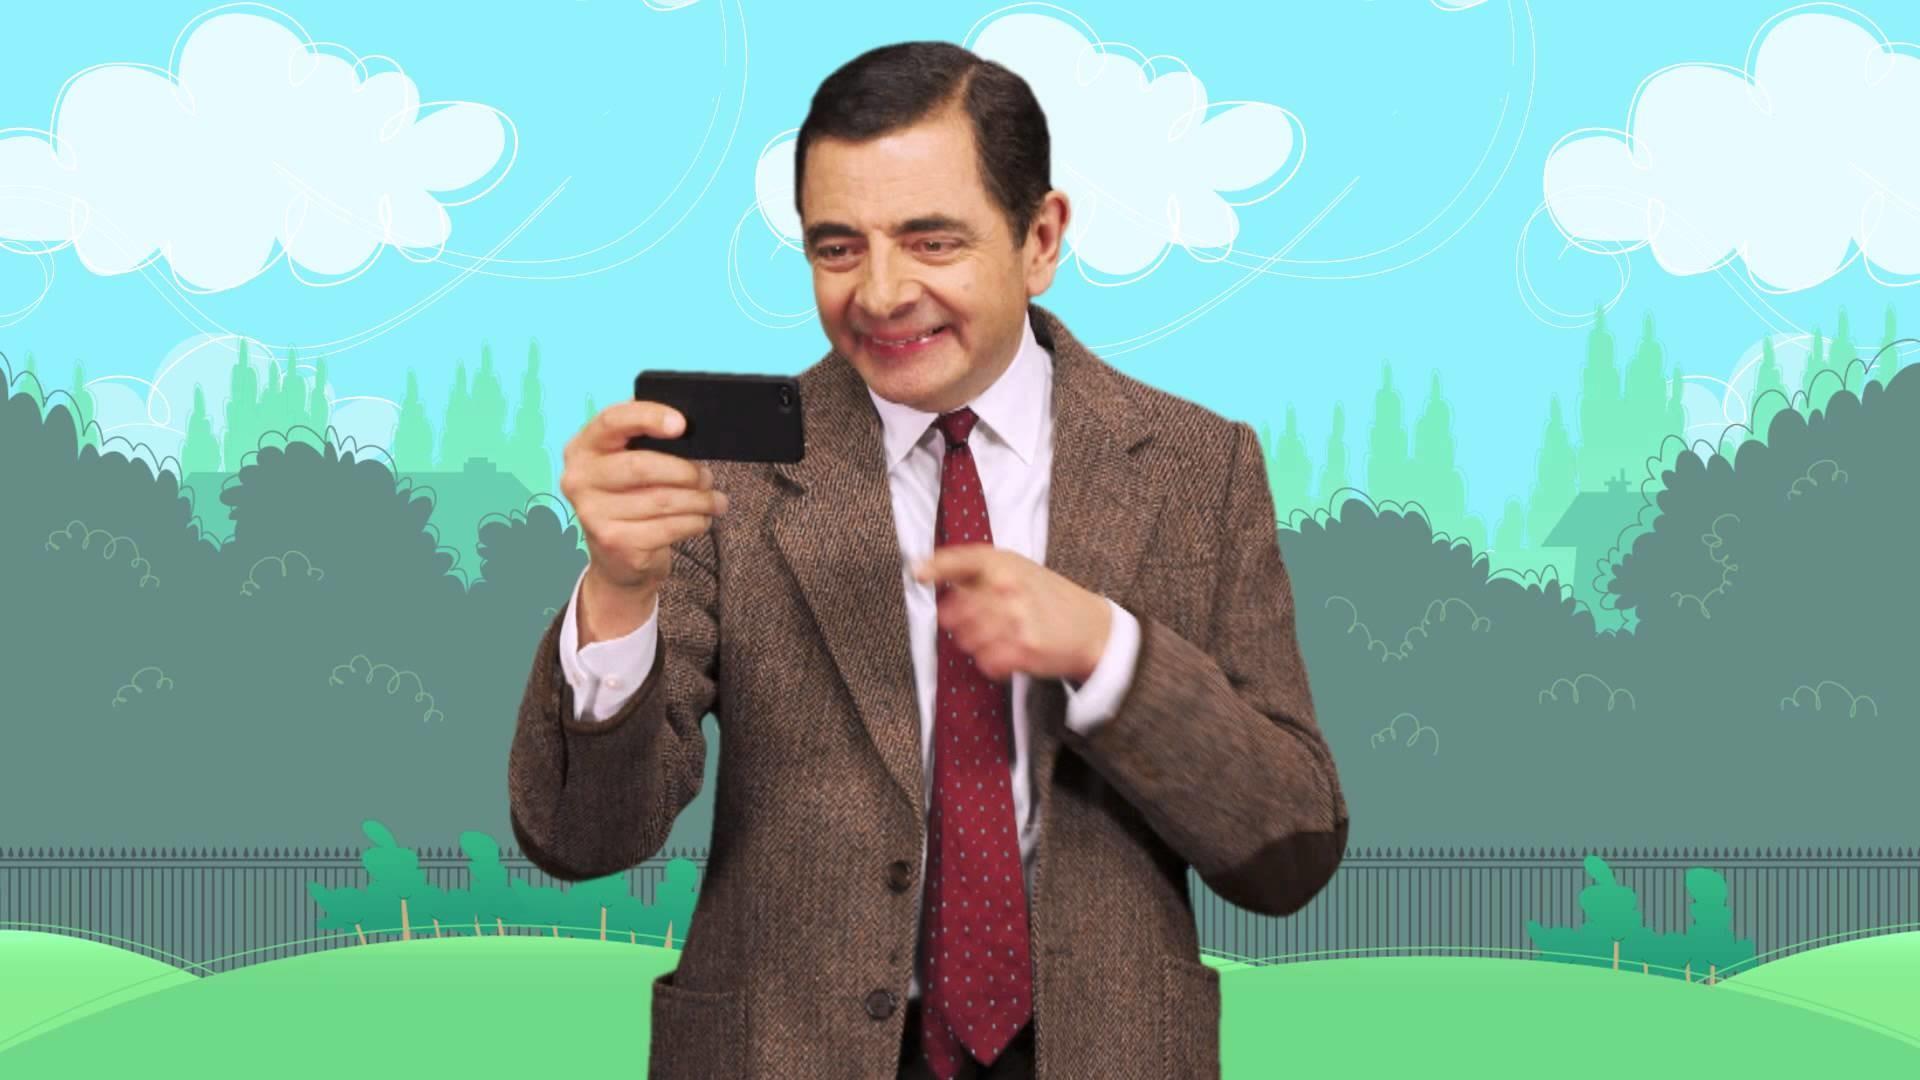 Mr Bean Wallpaper